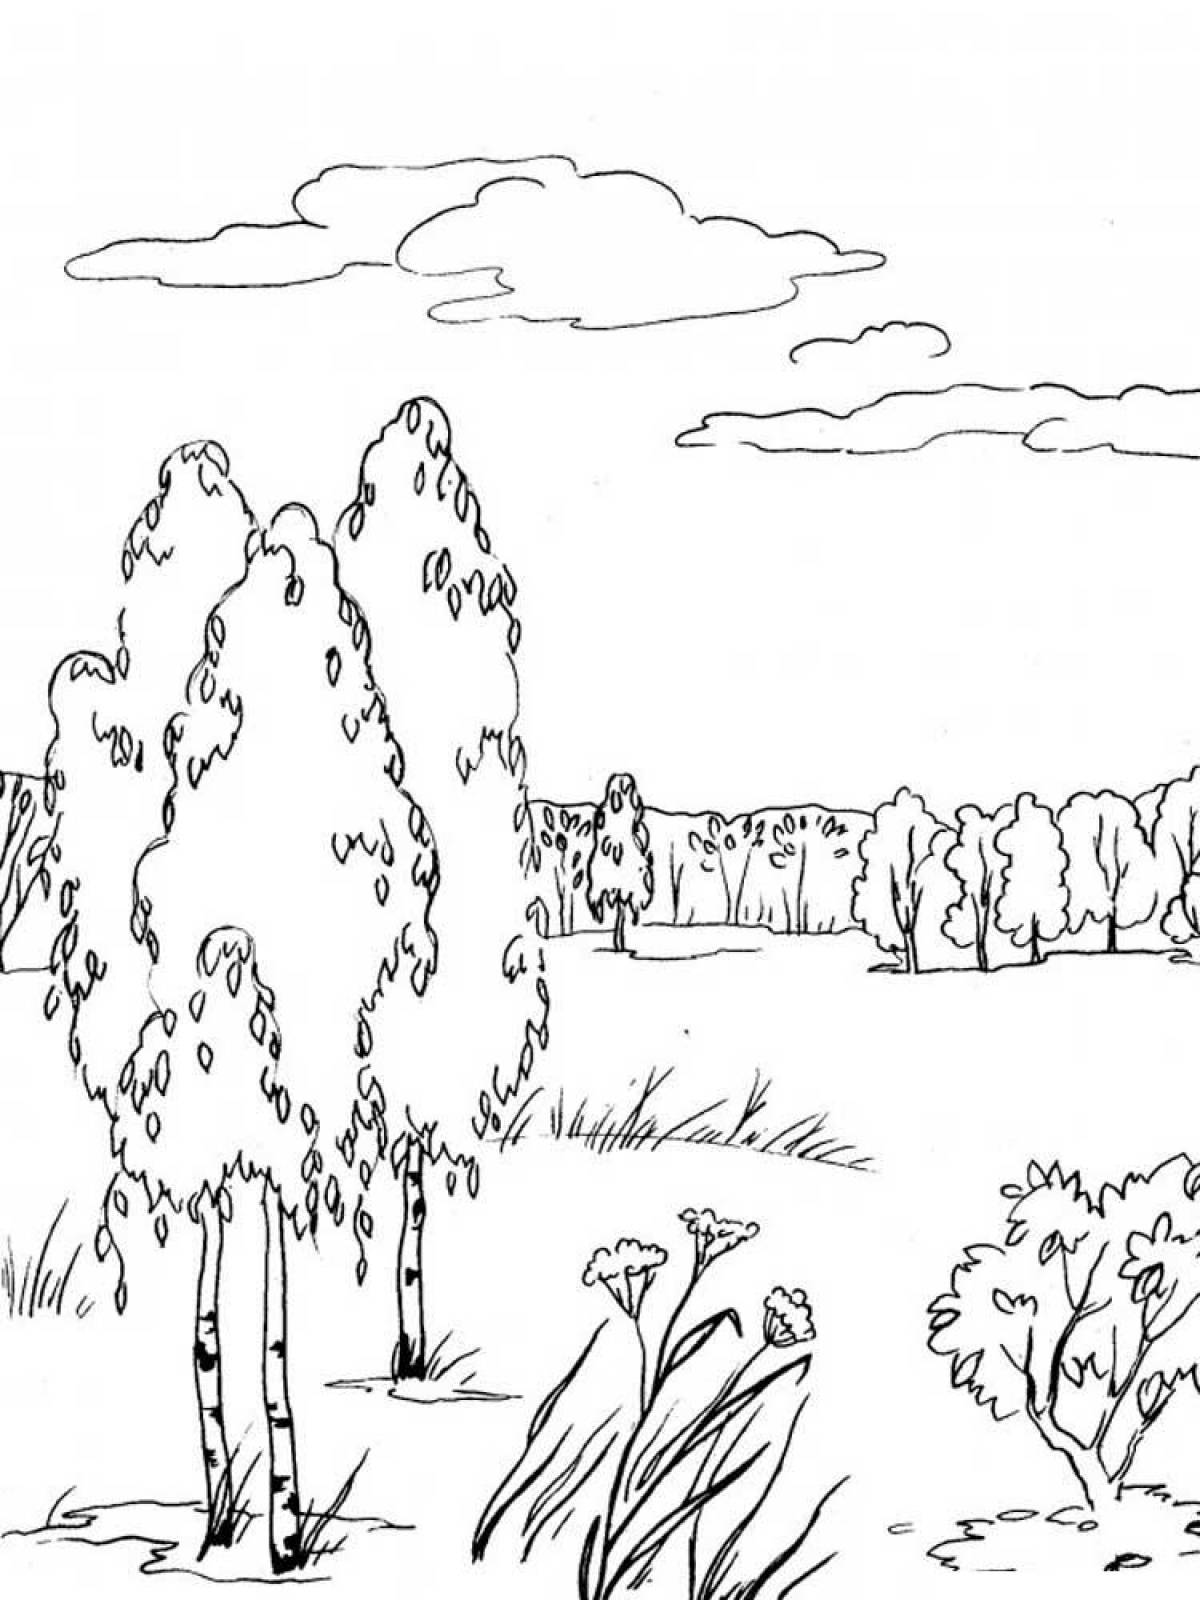 Landscape of a birch in a field